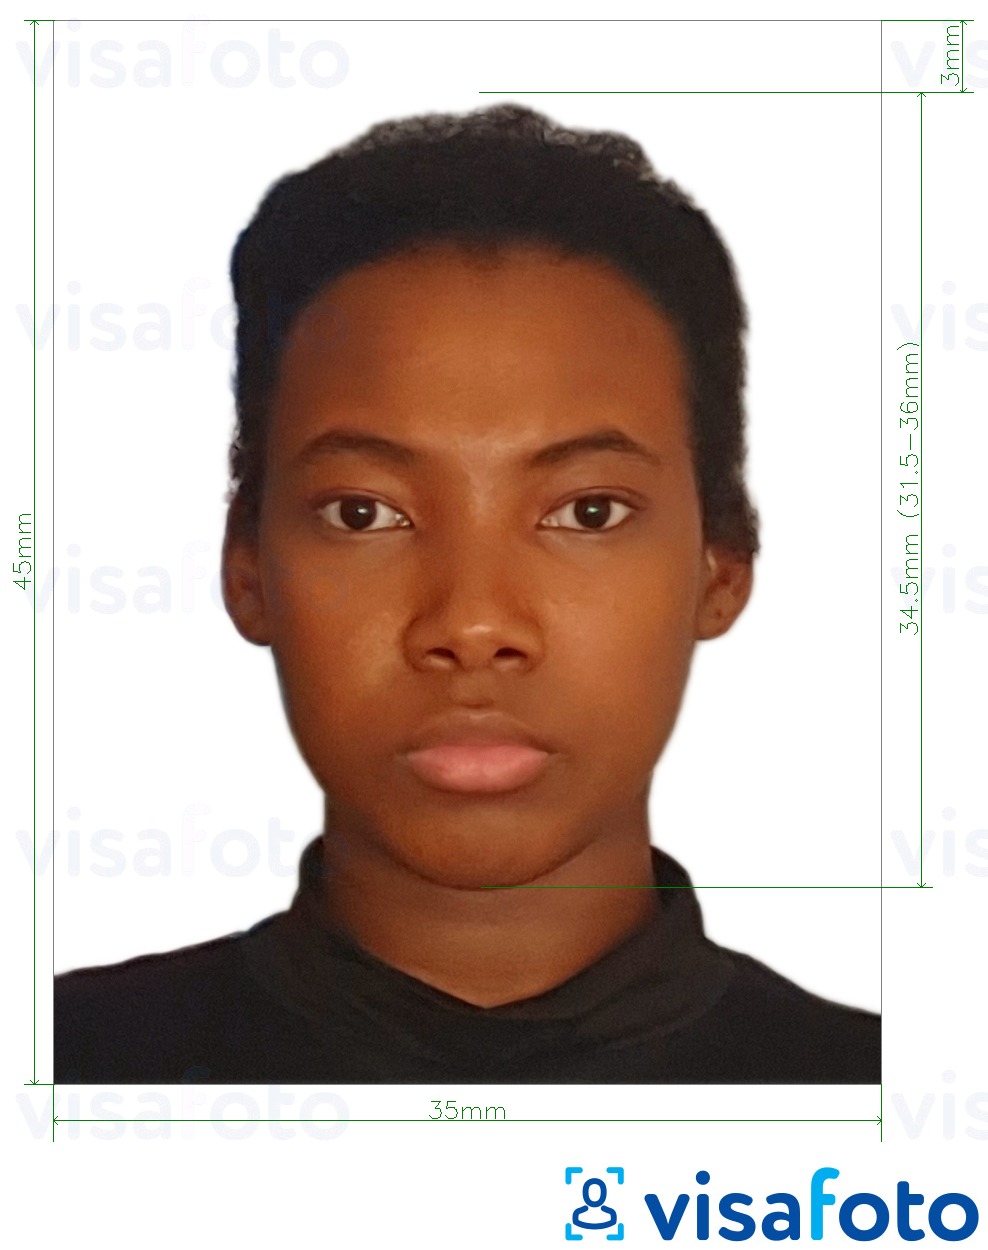 Przykład zdjęcia dla Paszport Demokratyczna Republika Kongo 35x45 mm (3.5x4,5 cm) z podaniem dokładnego rozmiaru.